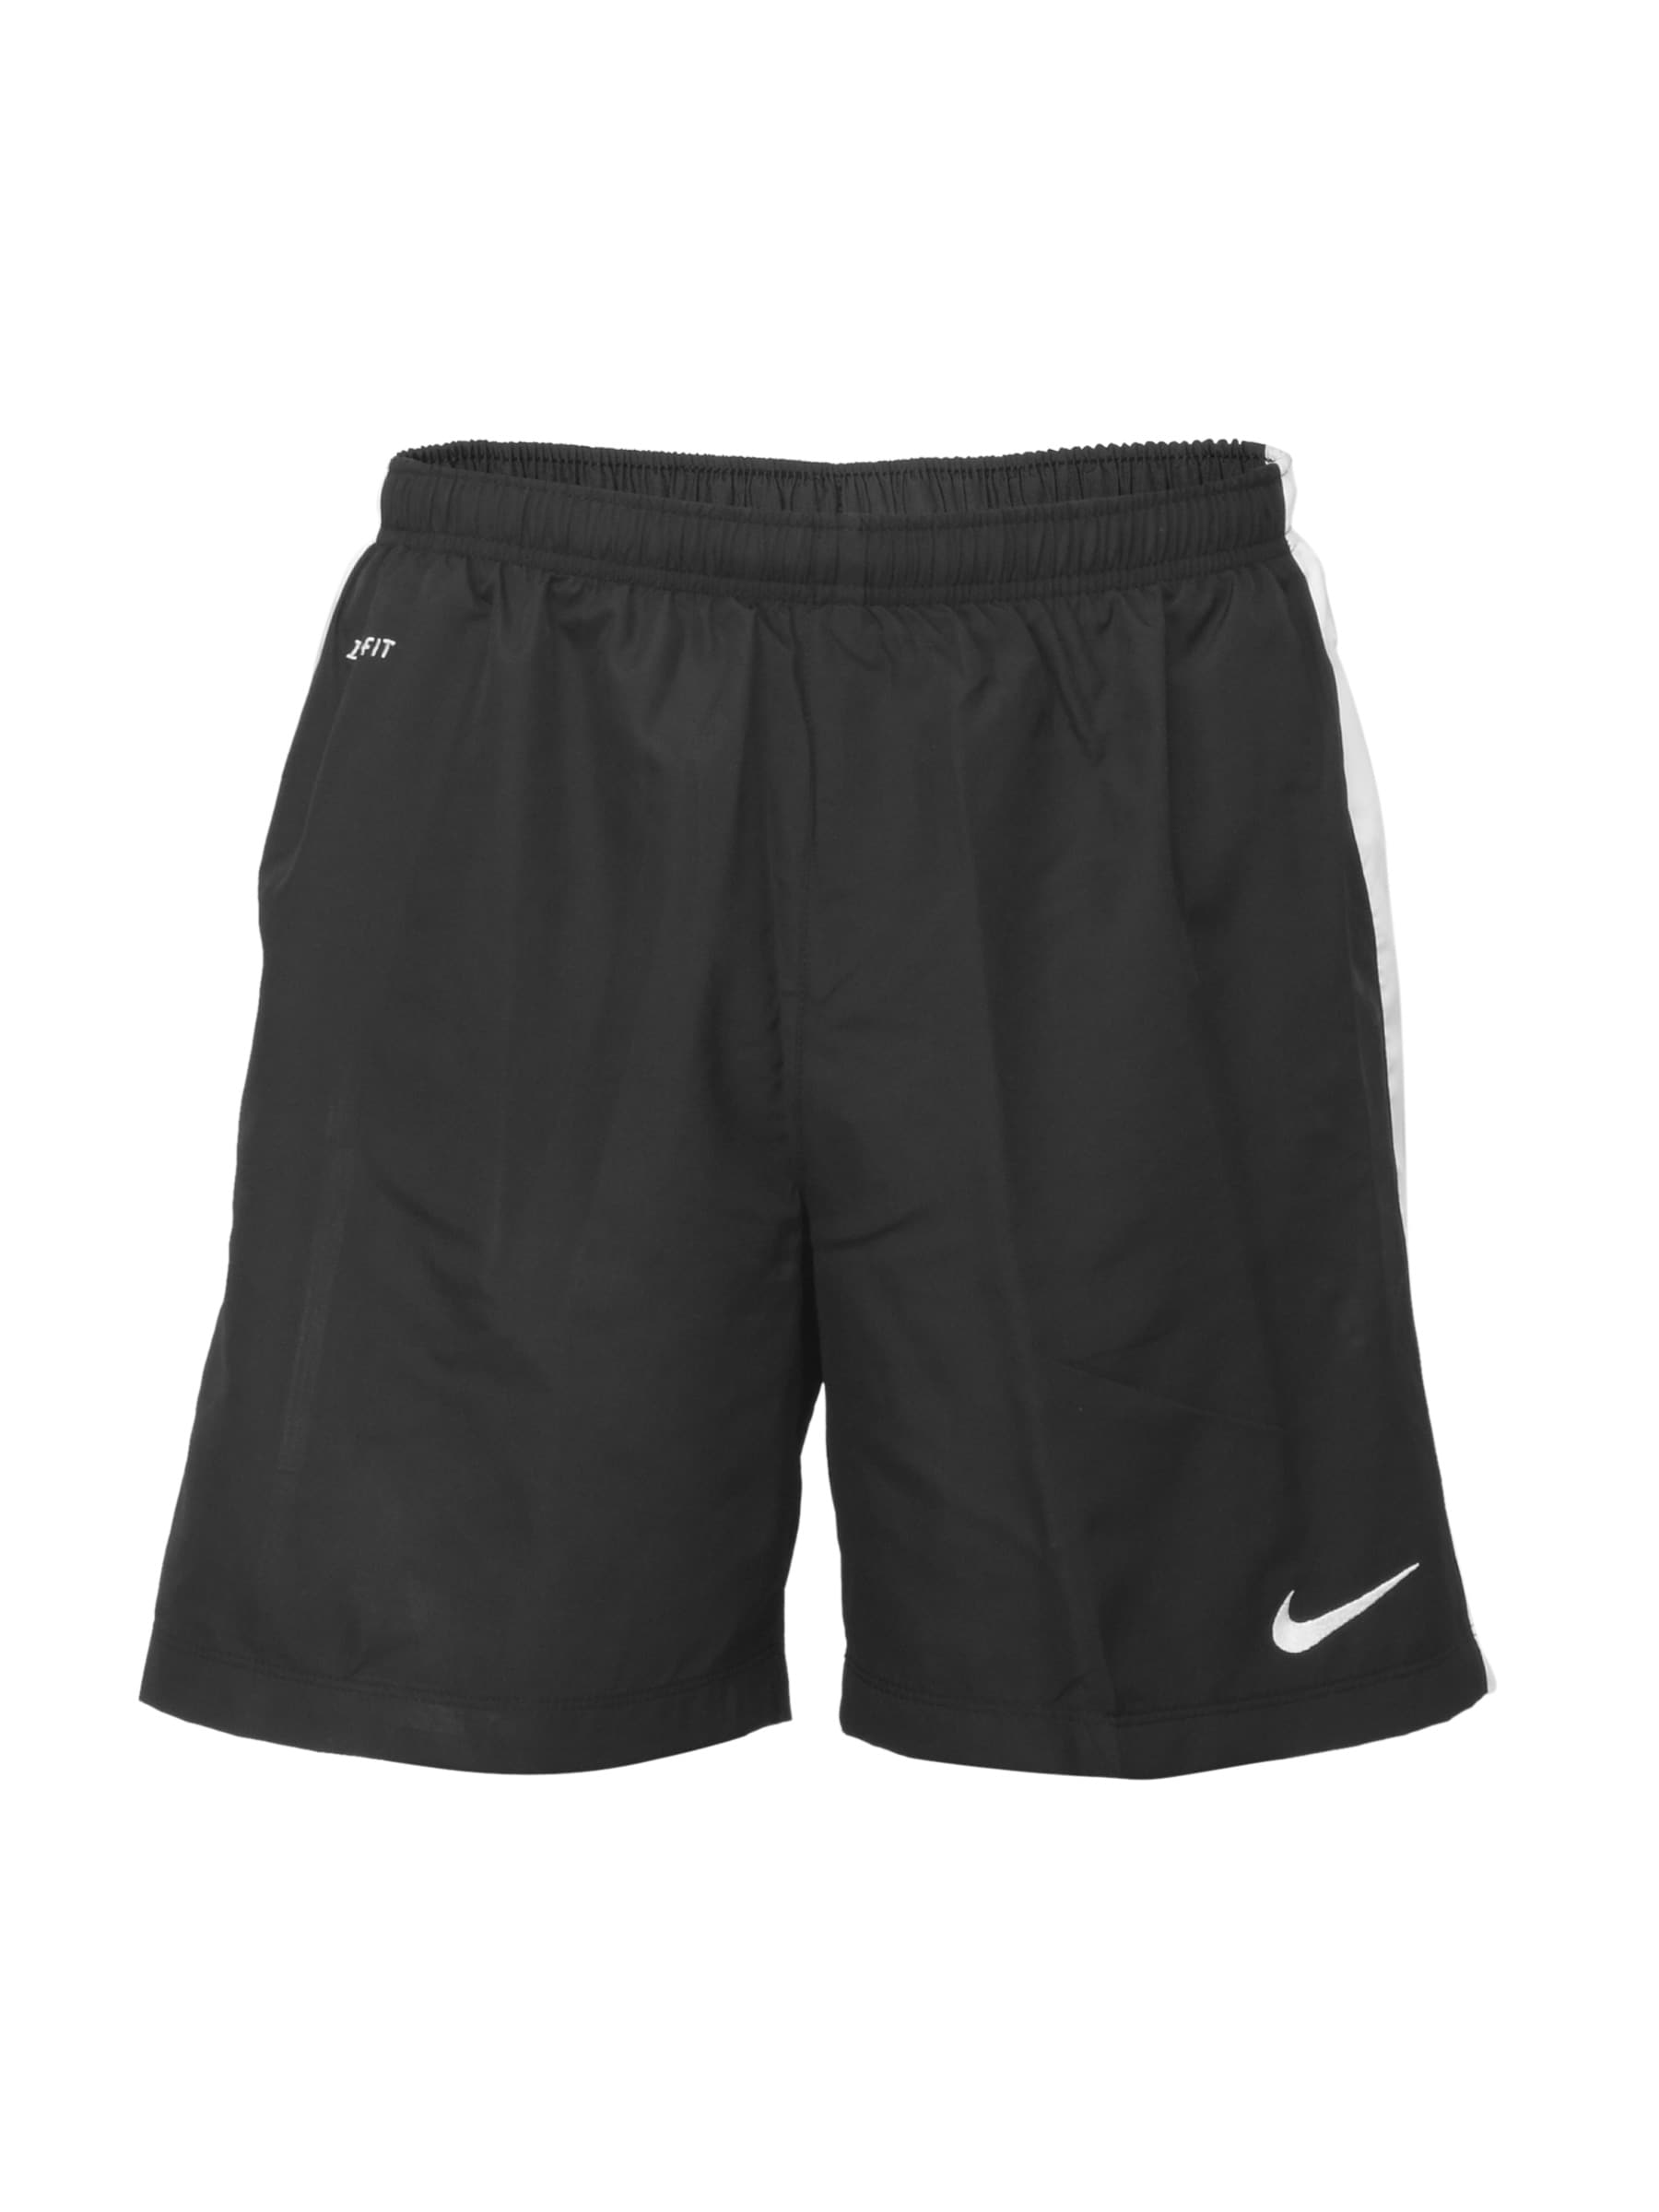 Nike Men Black Shorts